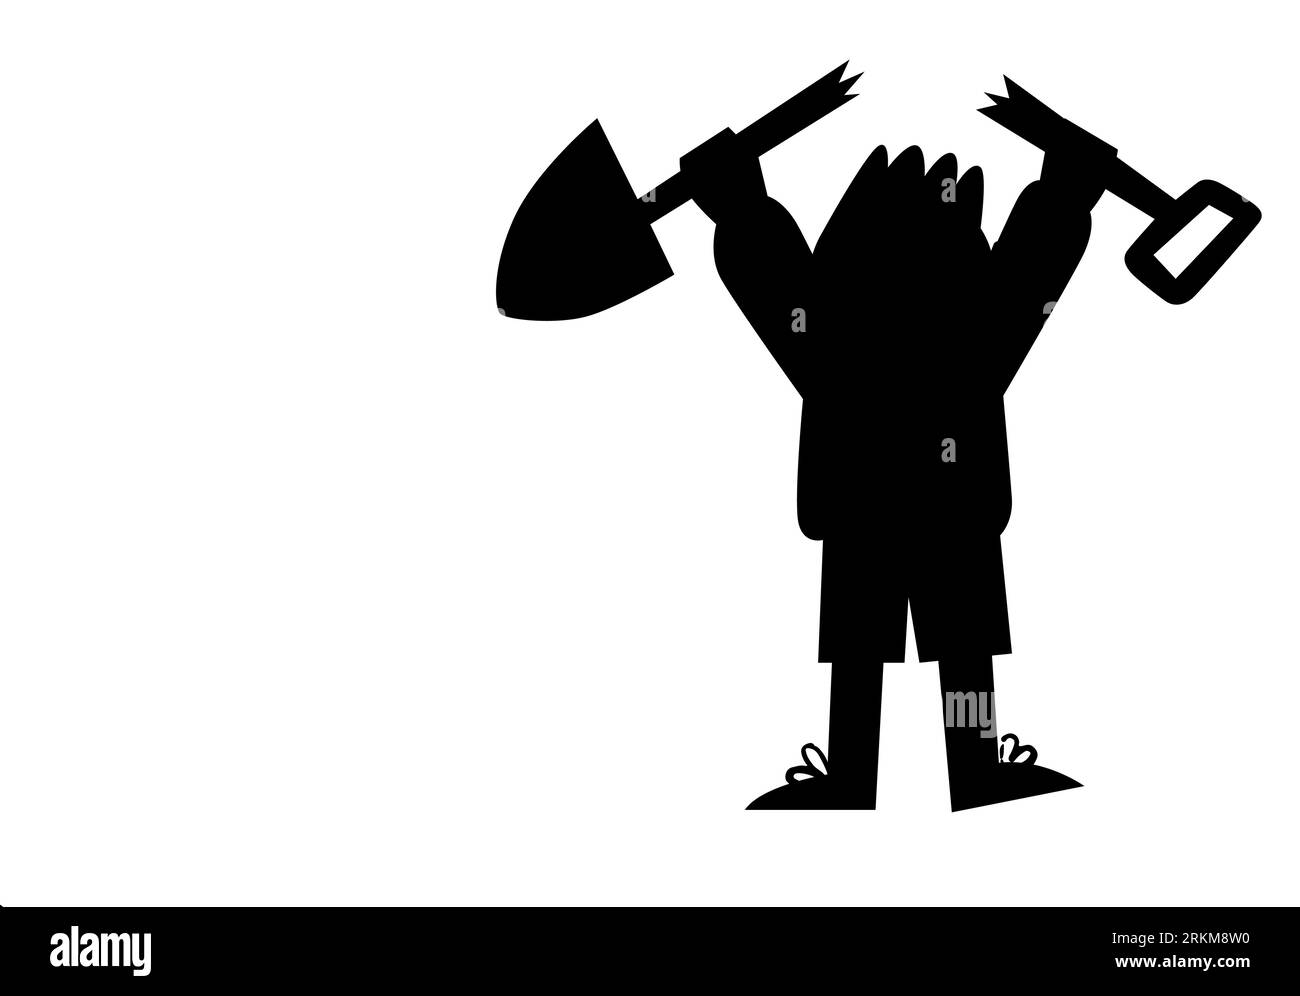 Schwarze Silhouette eines kleinen Zeichentrickkindes, das eine gebrochene Axt hält, ein spielendes Kind, ein Kind, das Fehler macht, Unfug-Vektor isoliert auf weißem Hintergrund Stock Vektor